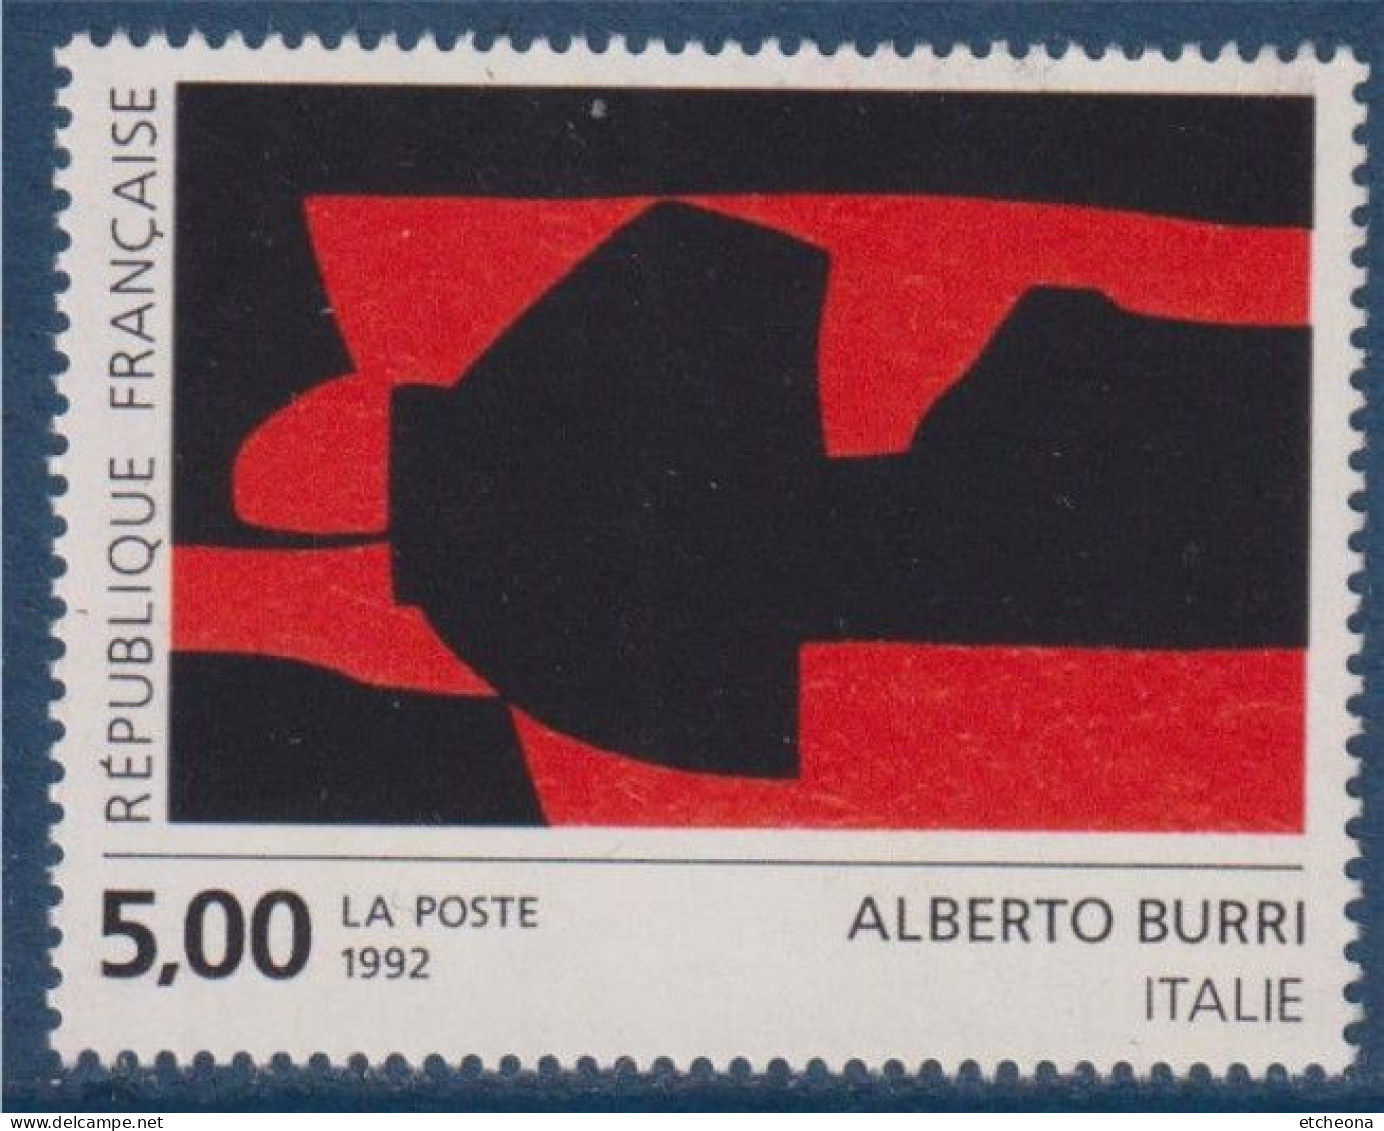 Série Européenne D'art Contemporain "Création Pour La Poste" D'Alberto Burri N°2780 Neuf Italie - Nuovi